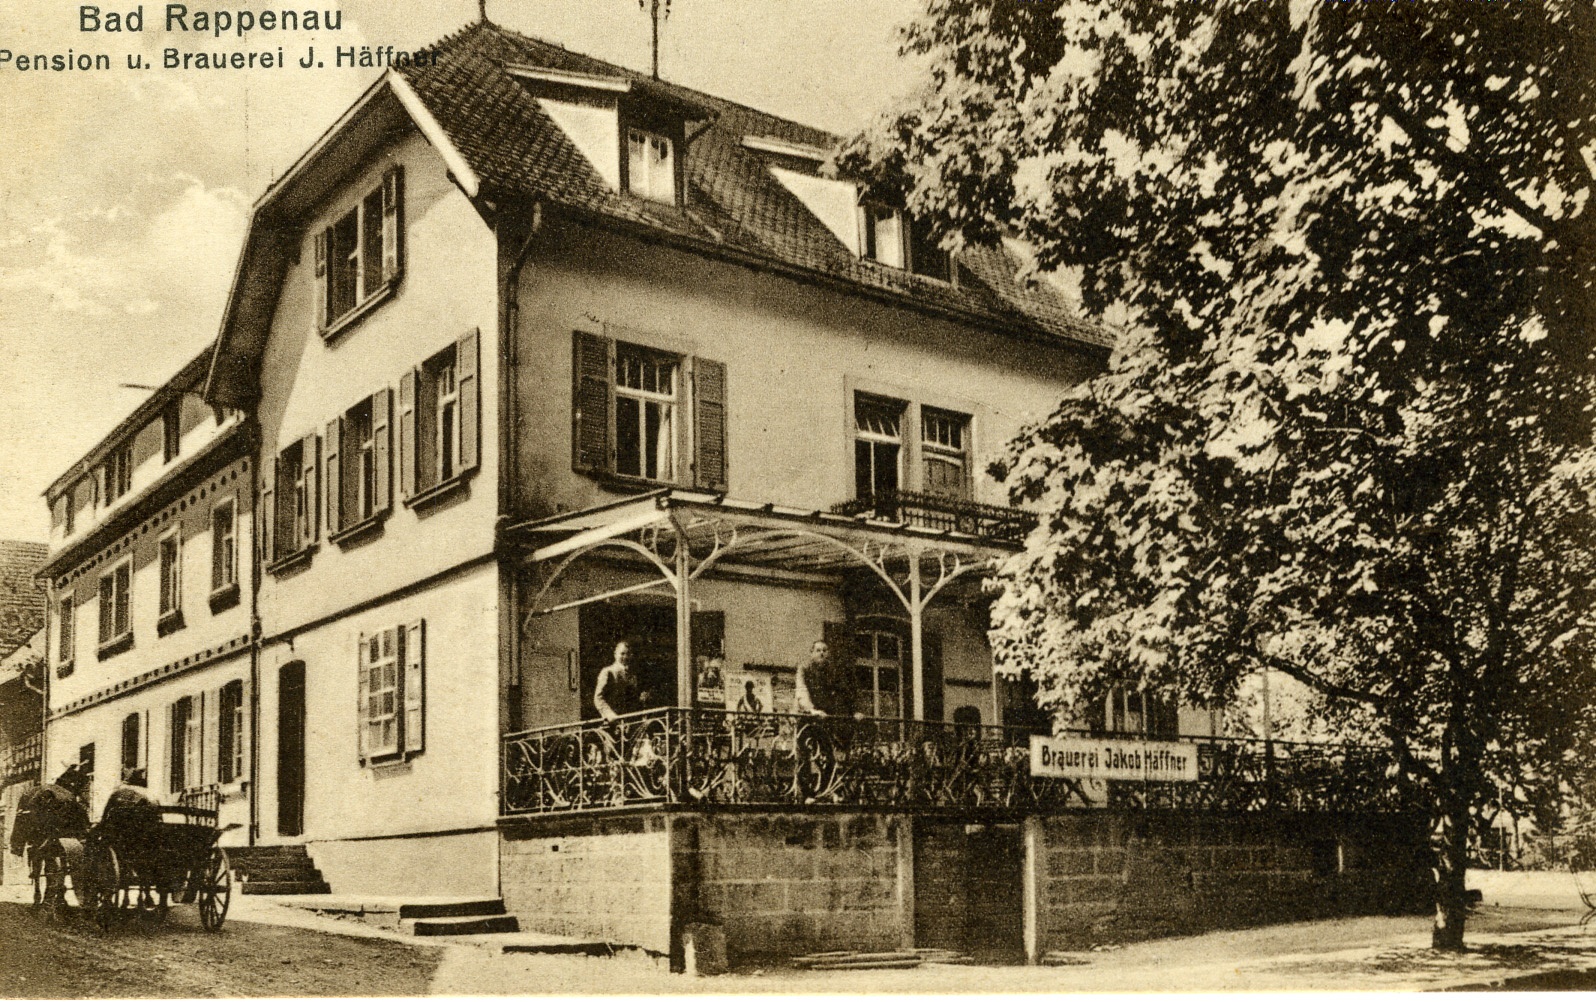 Postkarte Bad Rappenau 1928 (Historisches Museum der Pfalz, Speyer CC BY)